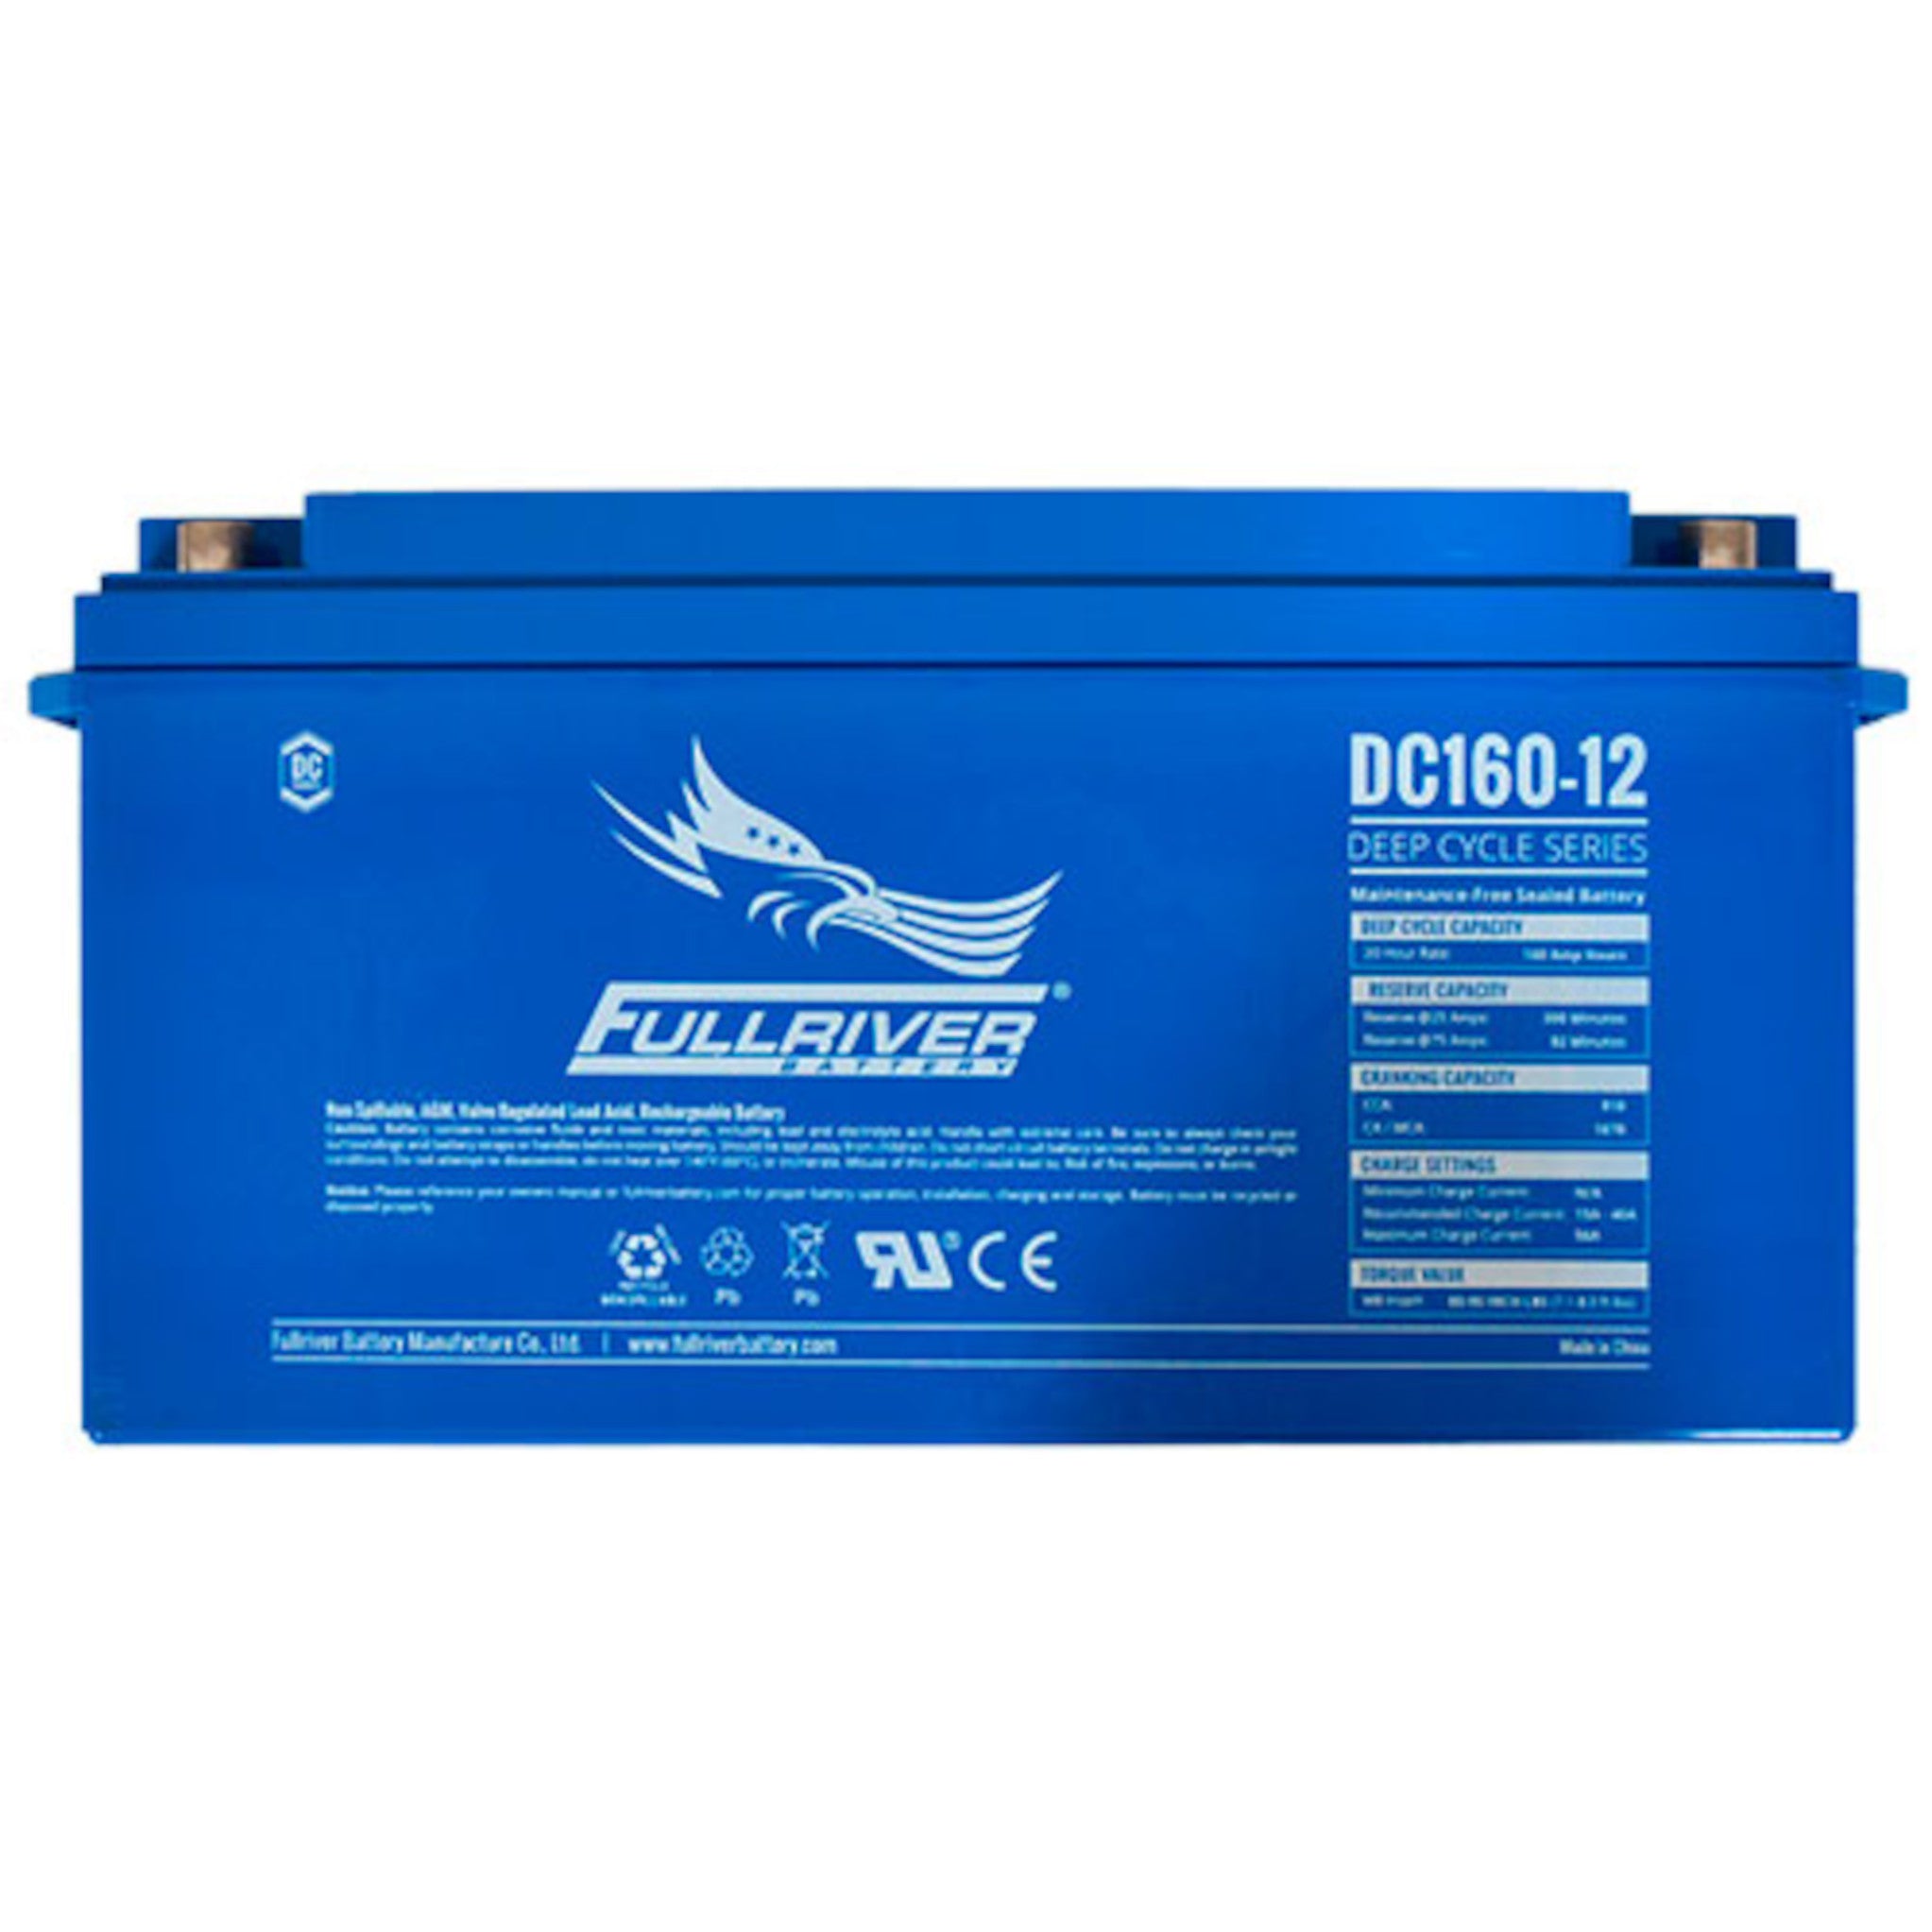 Fullriver DC160-12 AGM Battery